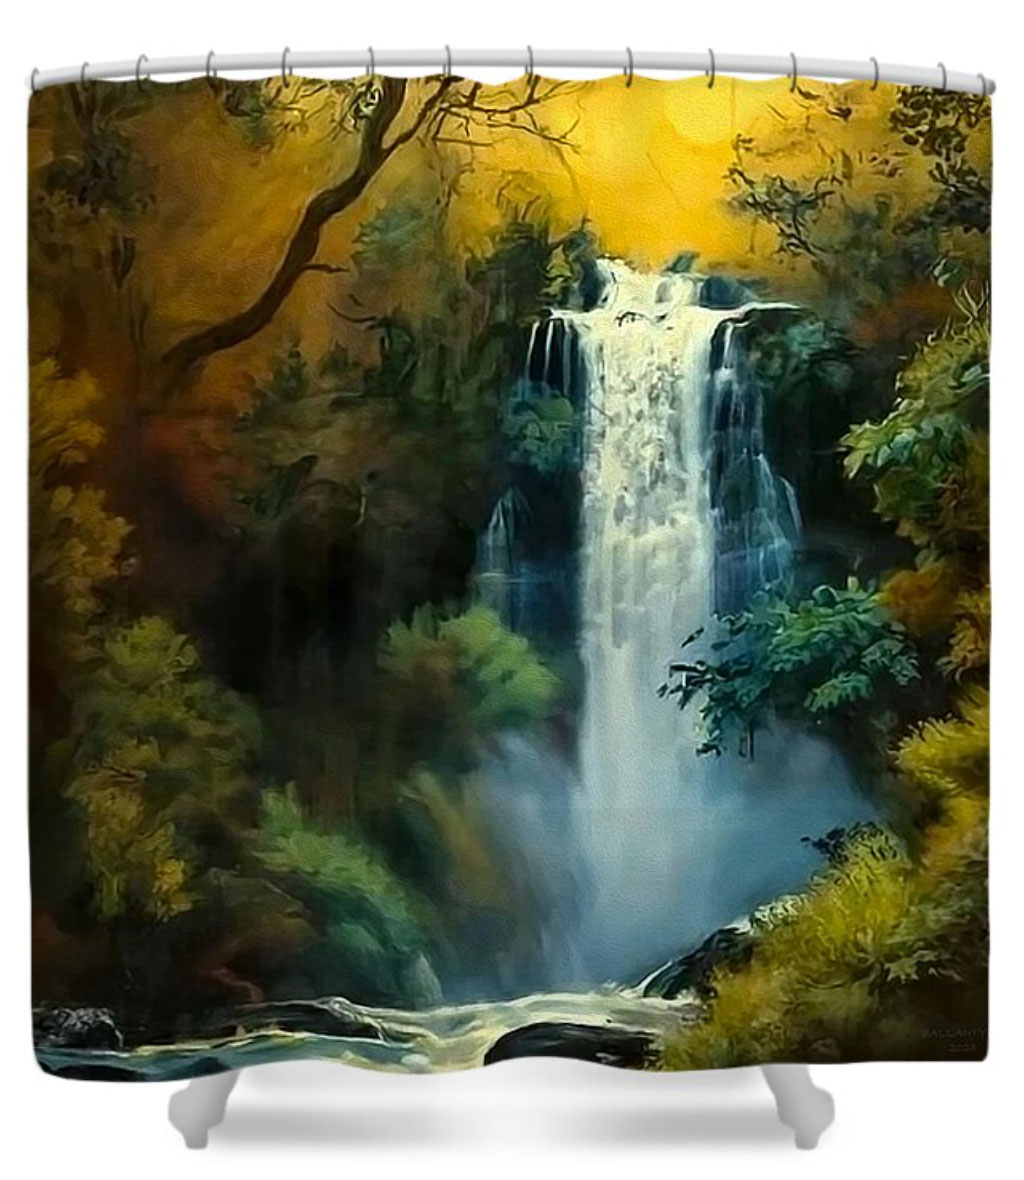 Tautuku Falls rendition image